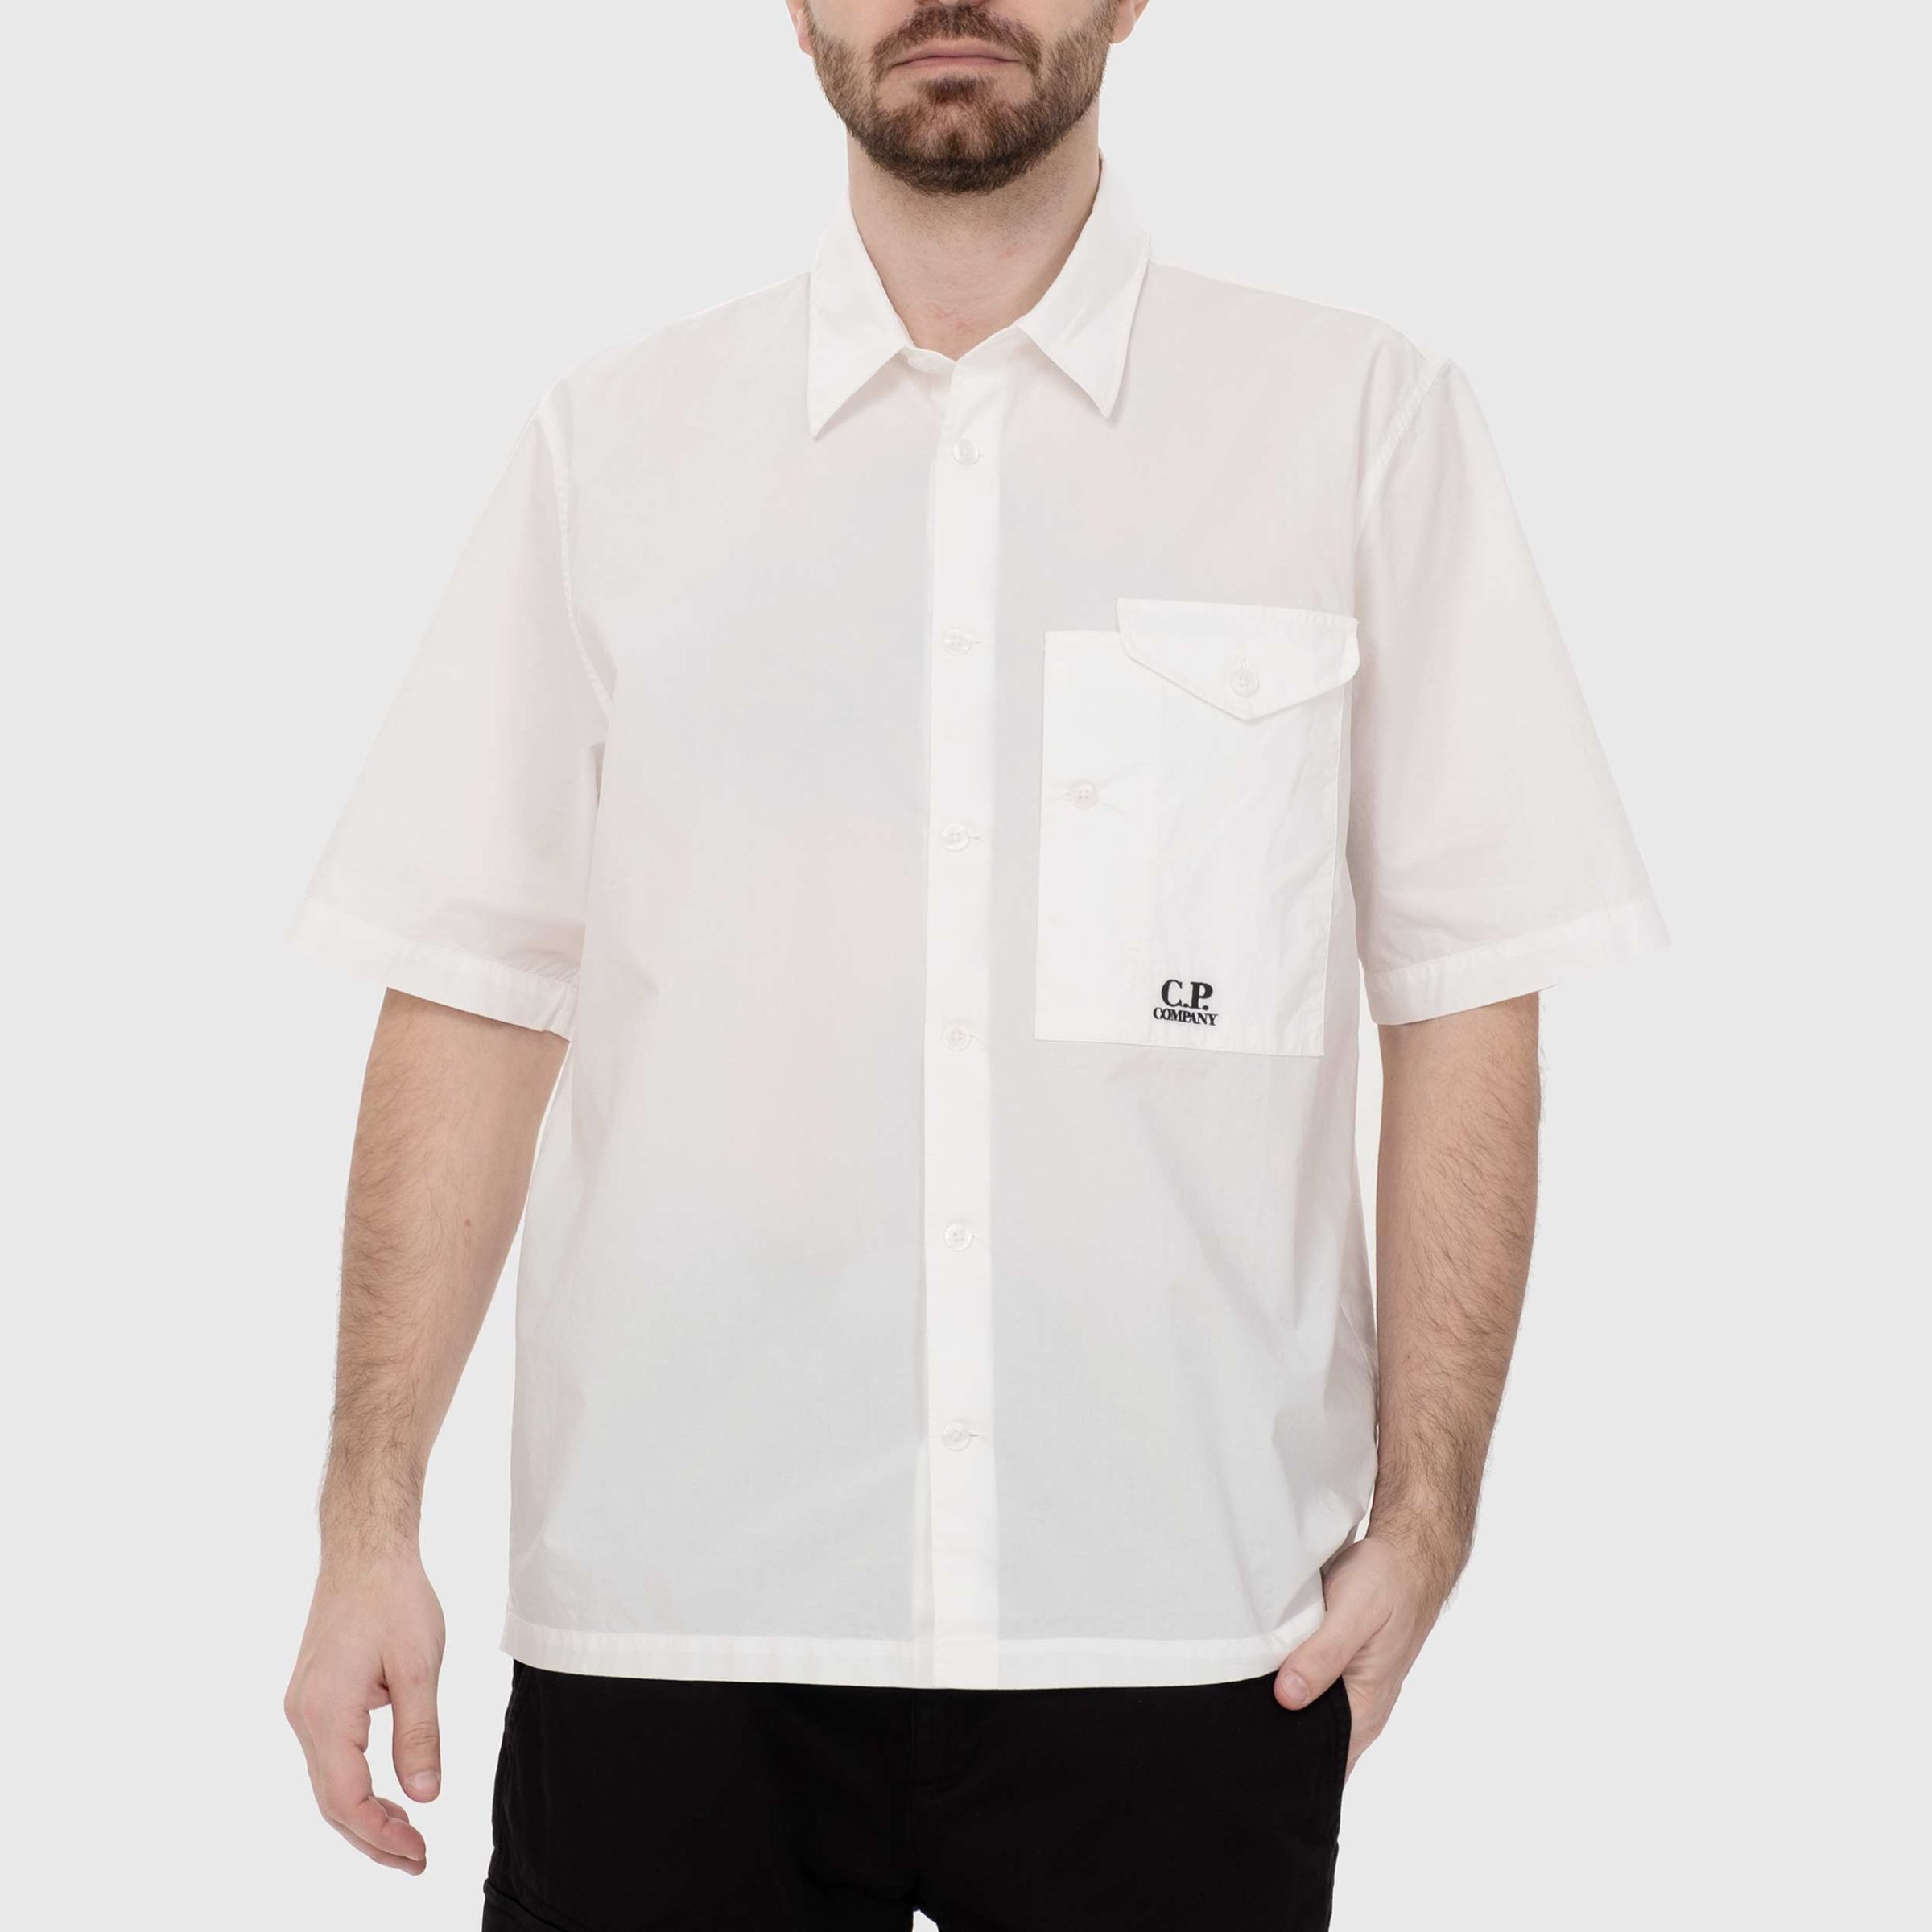 Рубашка C.P. Company белая